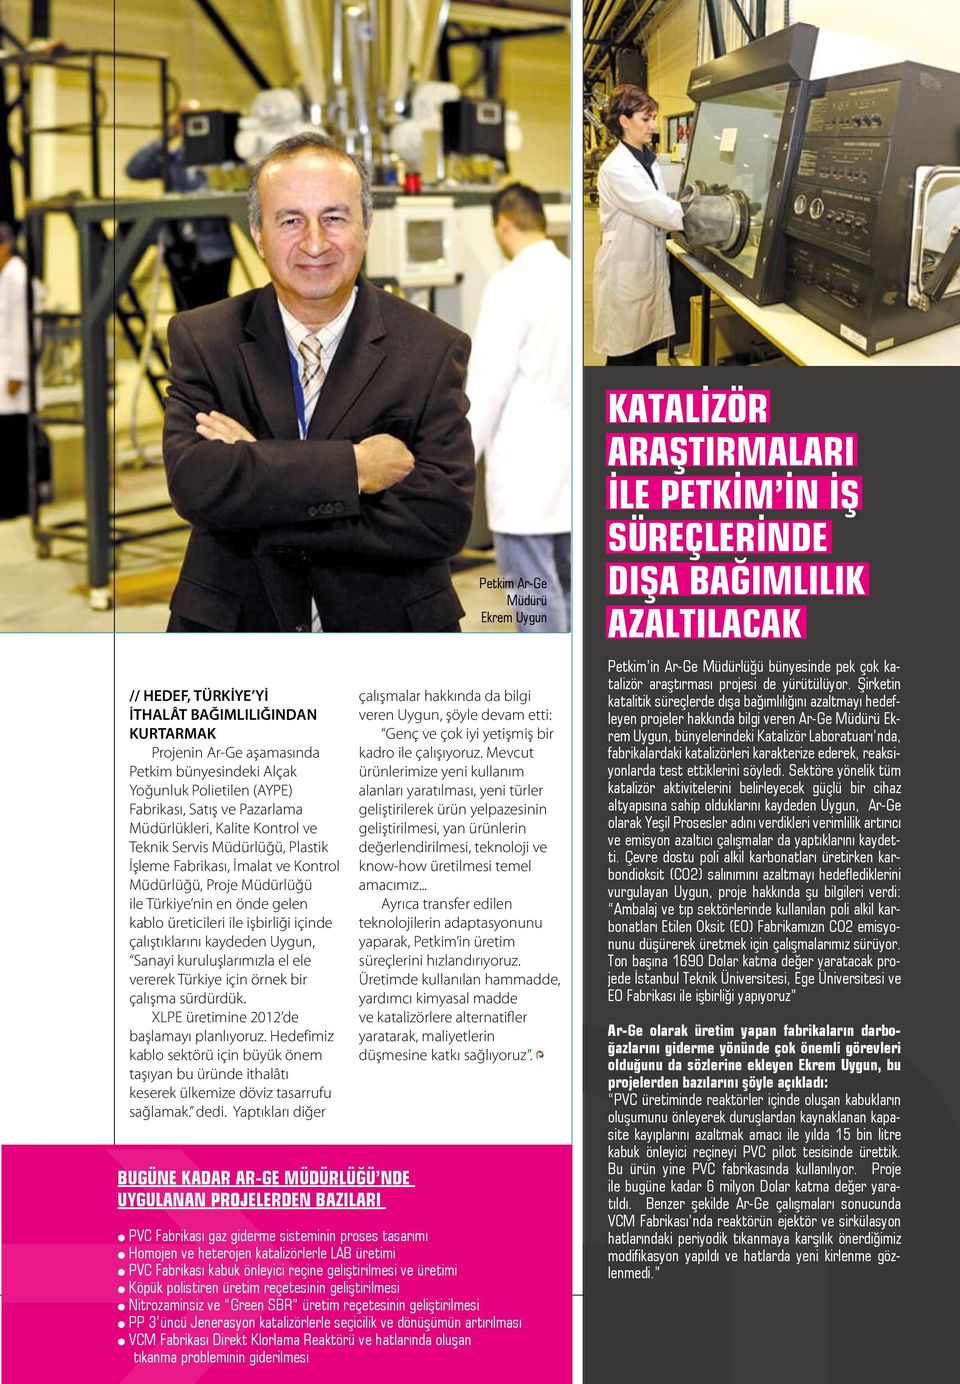 Sanayi kuruluşlarımızla el ele vererek Türkiye için örnek bir çalışma sürdürdük. XLPE üretimine 2012 de başlamayı planlıyoruz.